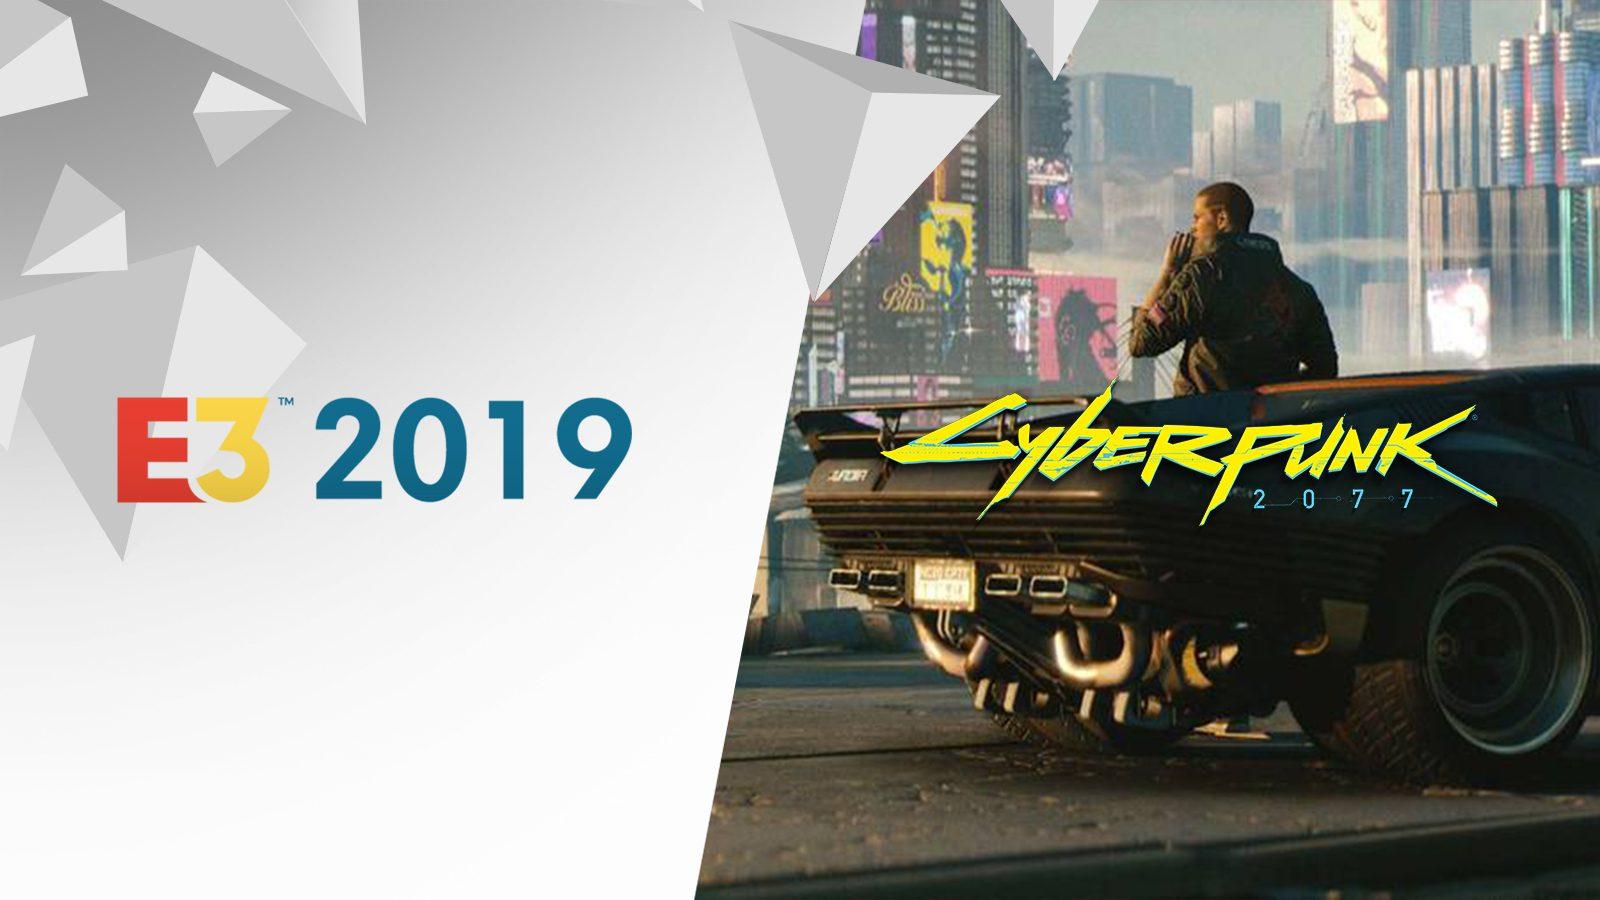 Cyberpunk 2077 at E3 2019: Schedule, release date rumors, gameplay